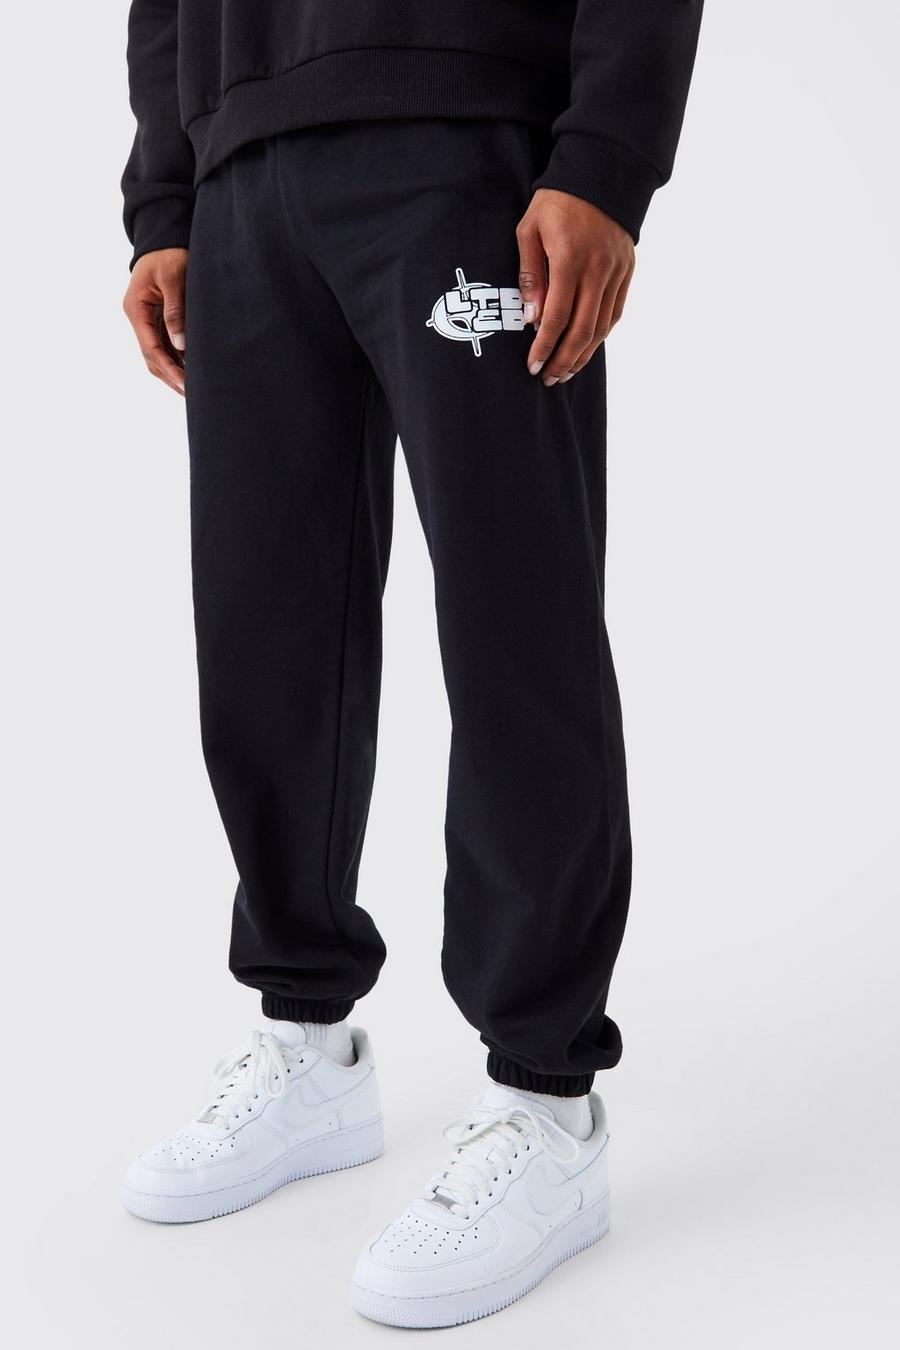 Pantalón deportivo con estampado gráfico Ltd Edt, Black